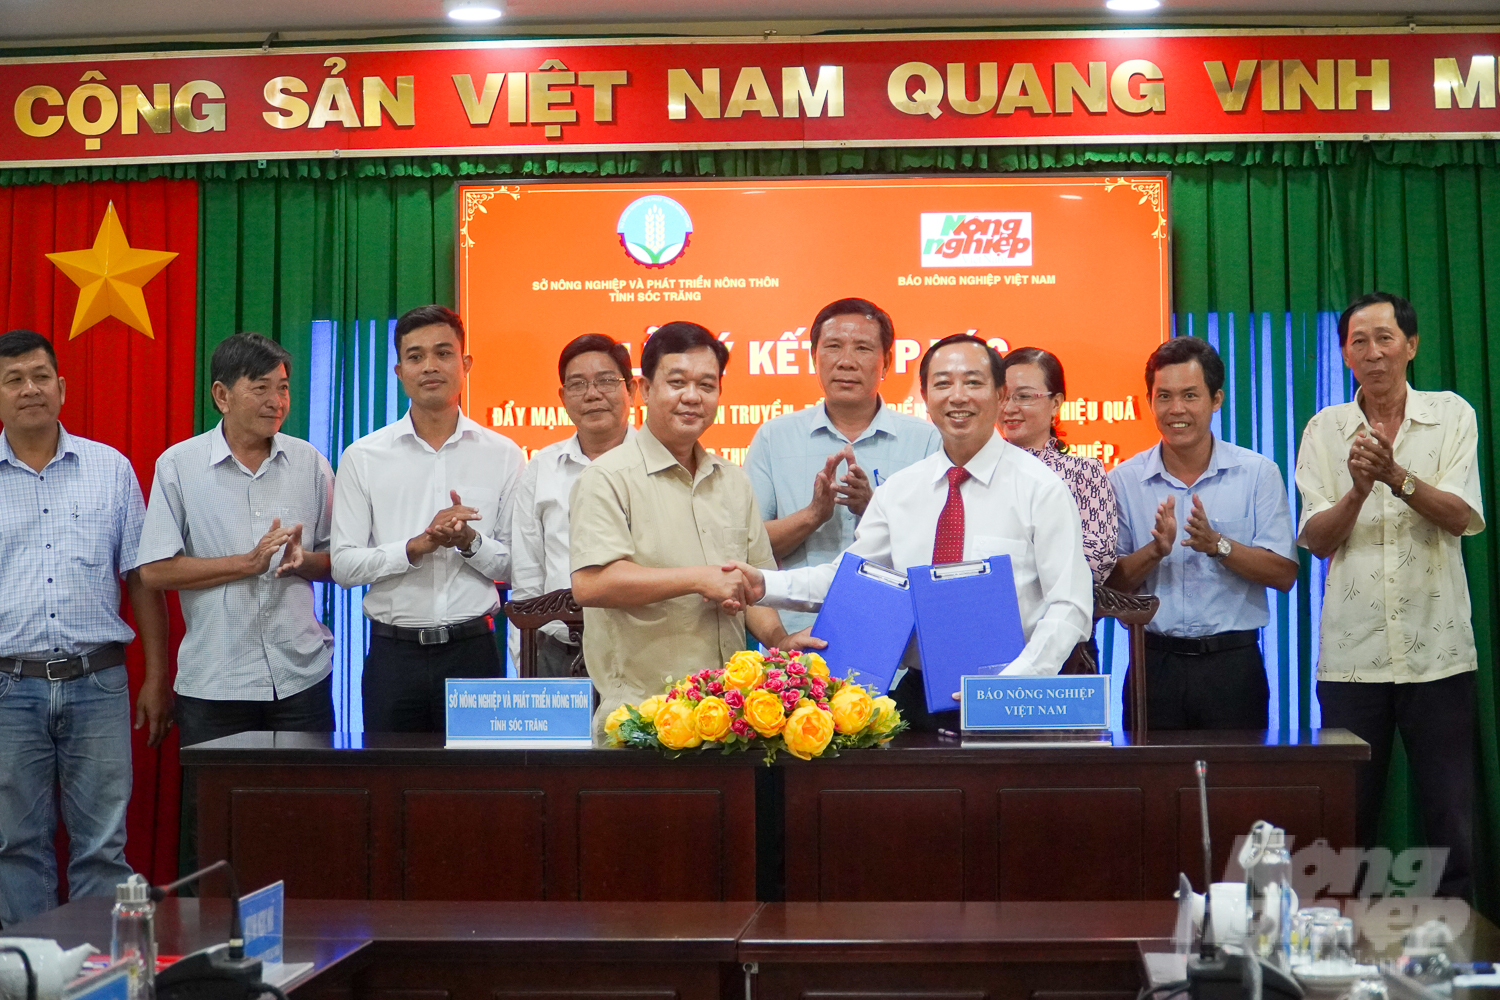 Sở NN-PTNT tỉnh Sóc Trăng và Báo Nông nghiệp Việt Nam ký kết thỏa thuận hợp tác đẩy mạnh tuyên truyền lĩnh vực nông nghiệp, nông dân, nông thôn giai đoạn 2023 - 2025. Ảnh: Kim Anh.